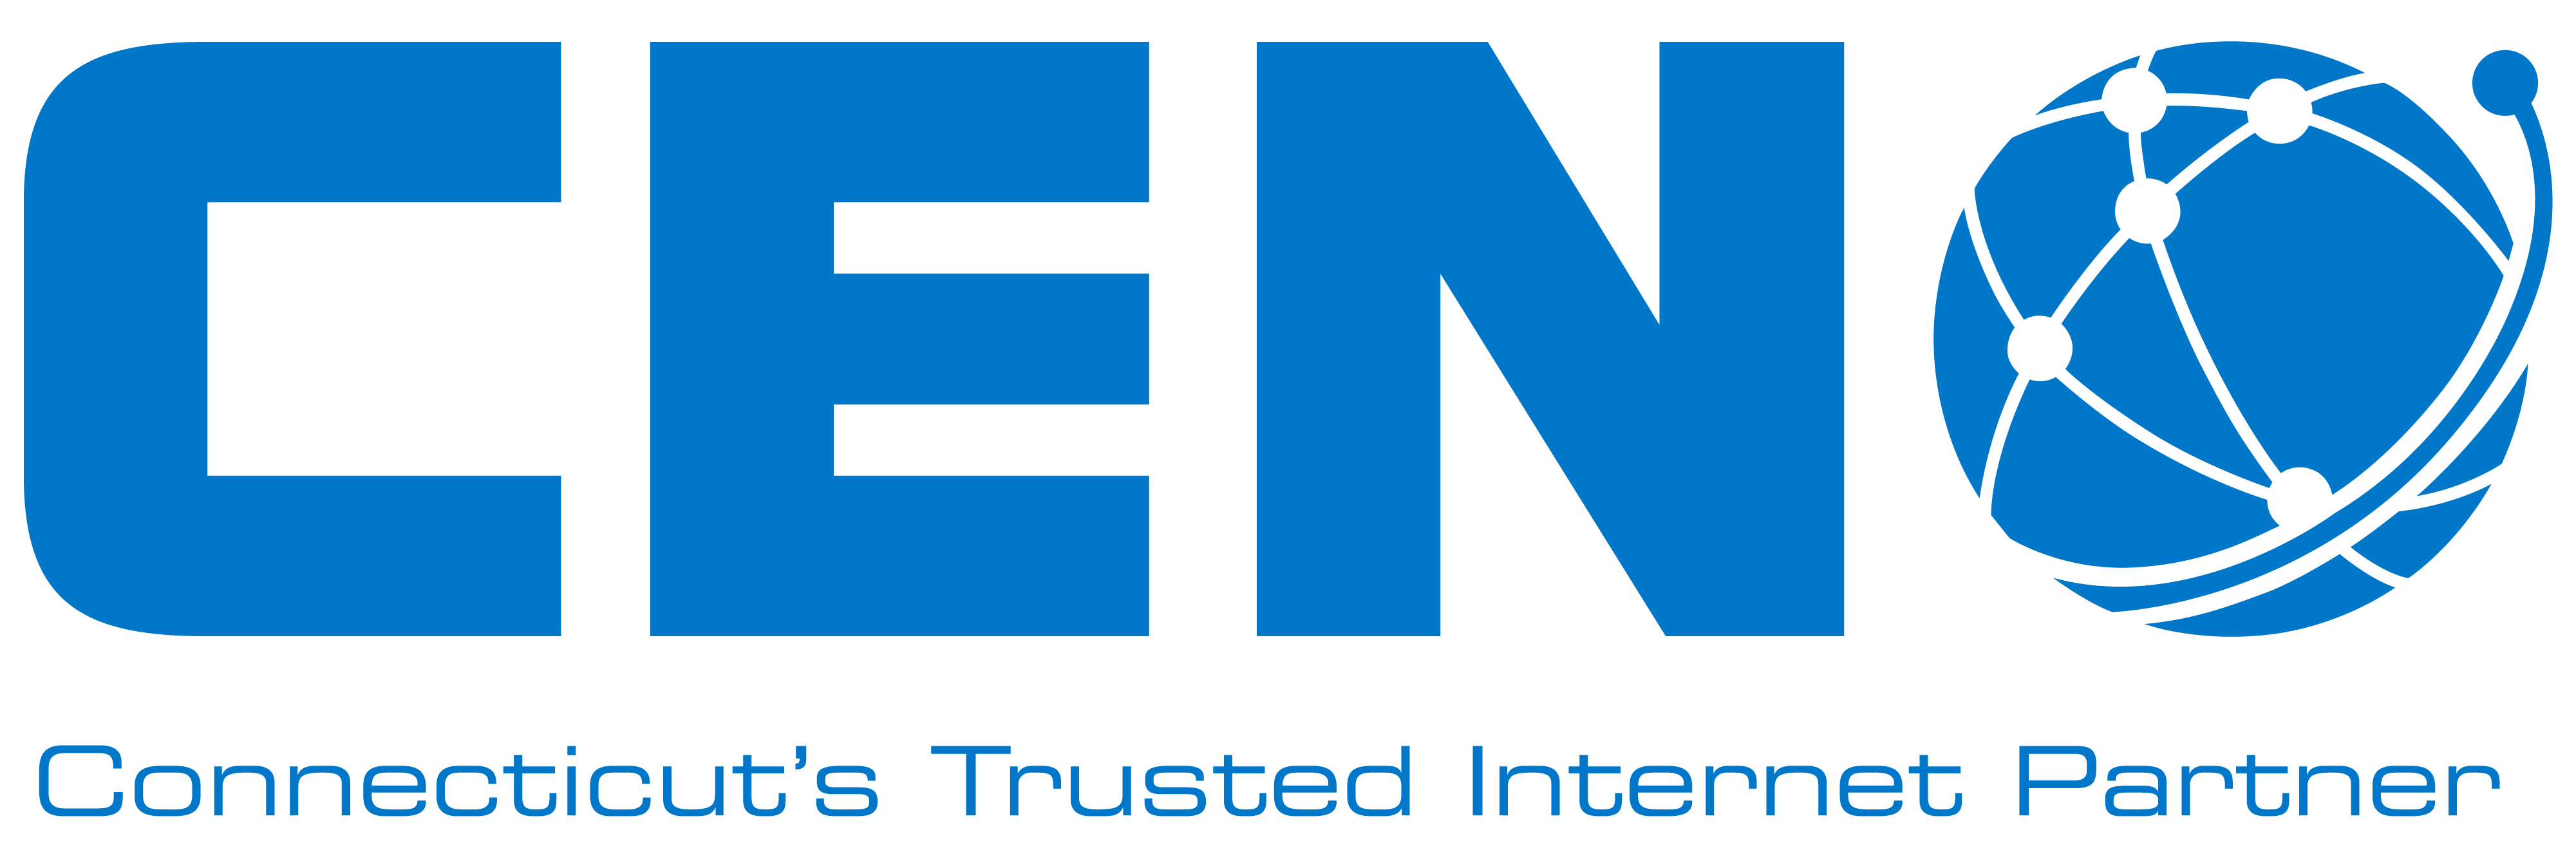 CEN NOC (Connecticut Education Network) logo